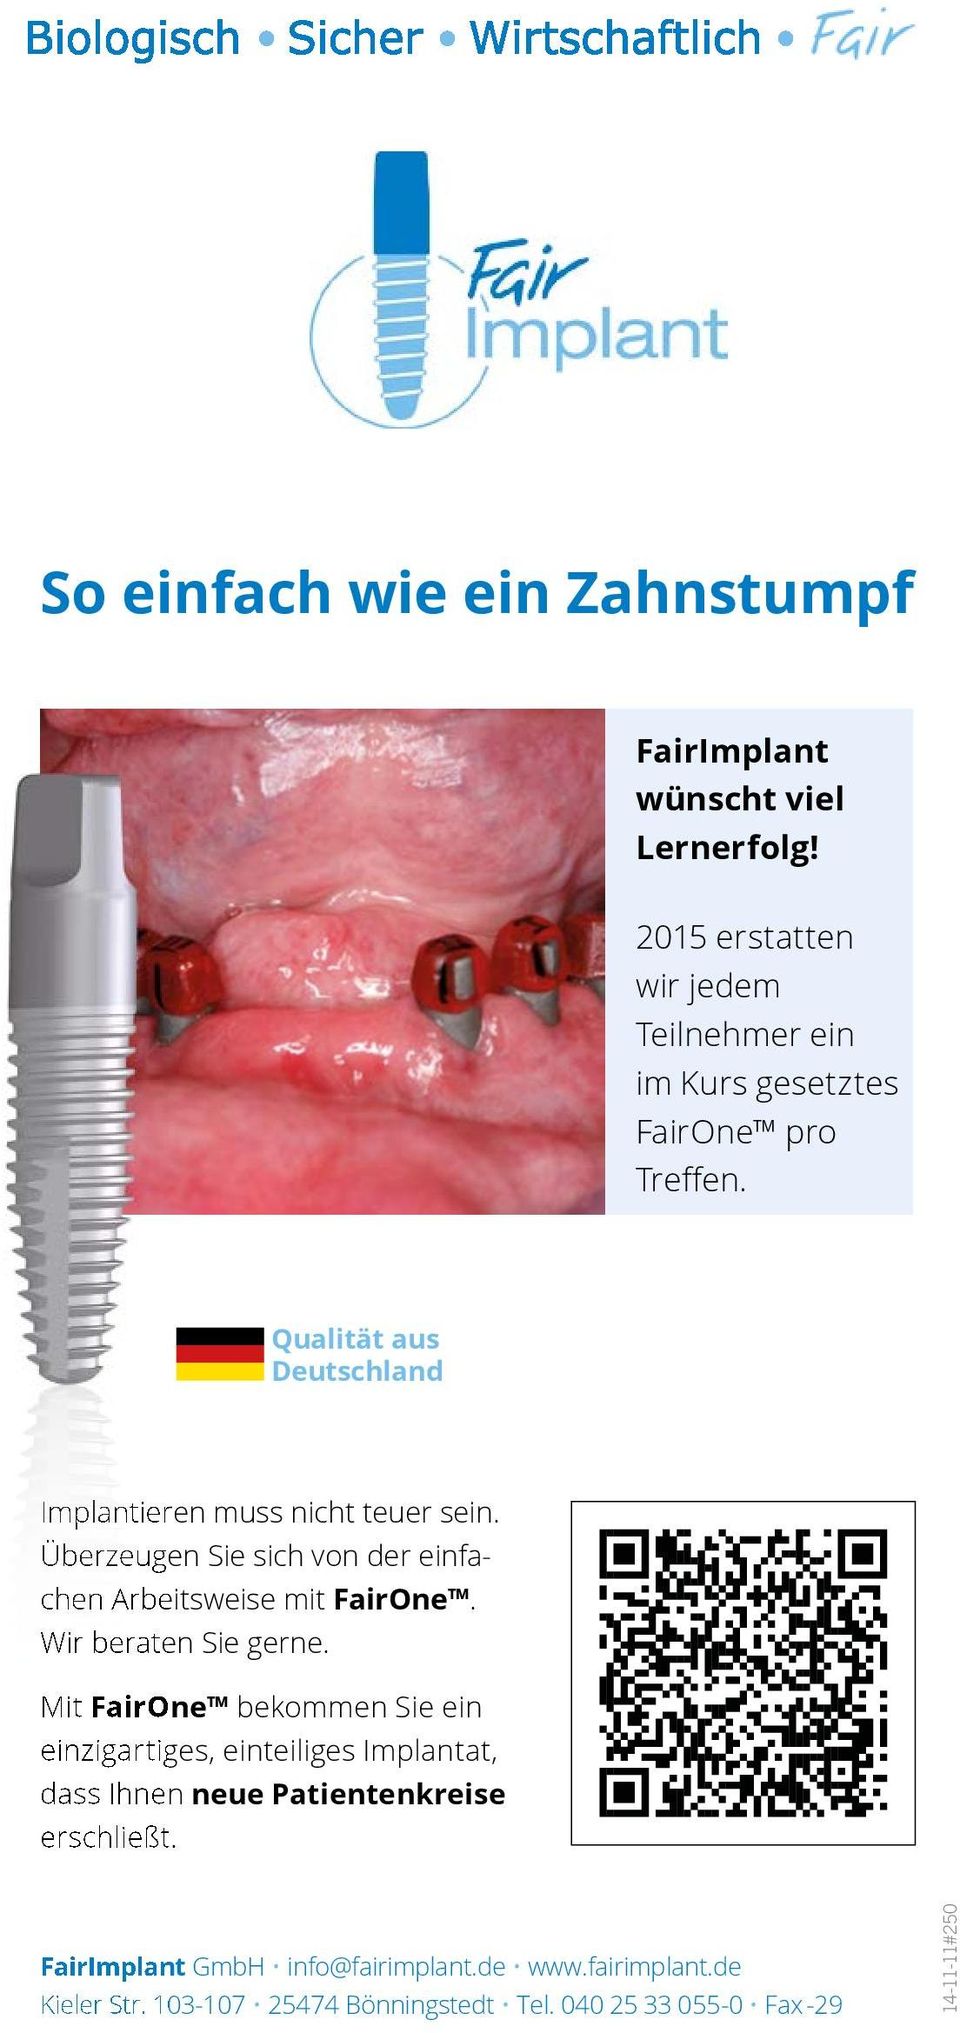 Qualität aus Deutschland Implantieren muss nicht teuer sein. Überzeugen Sie sich von der einfachen Arbeitsweise mit FairOne.